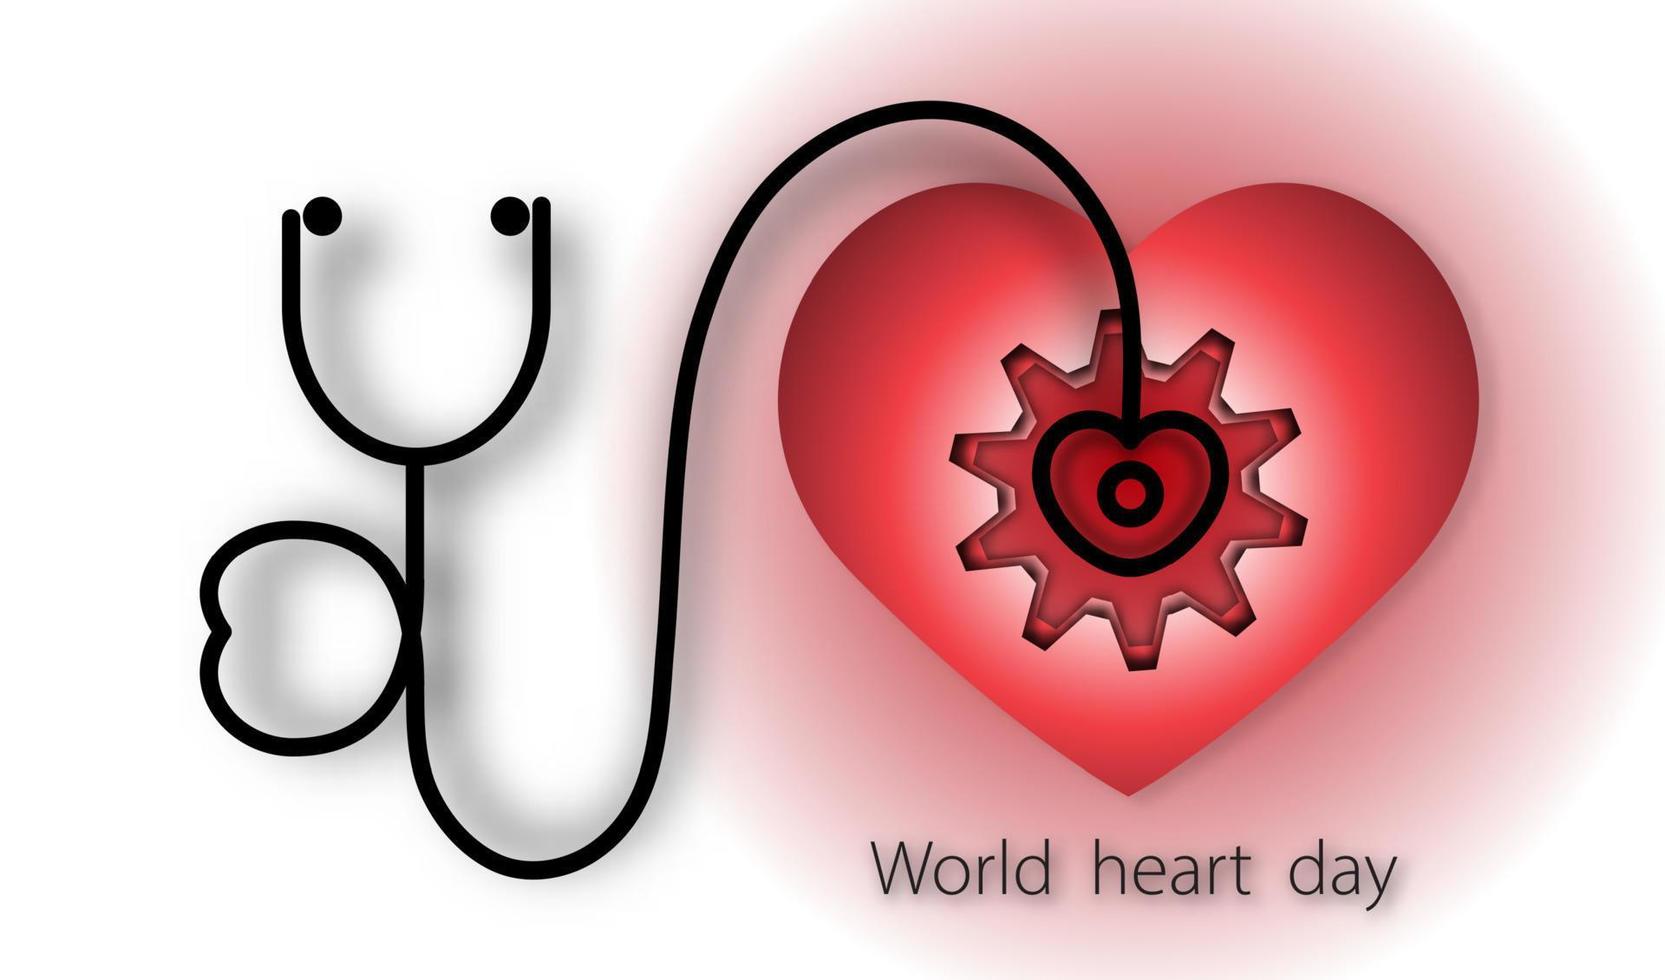 världshjärtadagen med hjärta och stetoskop och redskap på röd bakgrund av papperskonststil, vektor eller illustration med hälsokärlekskoncept